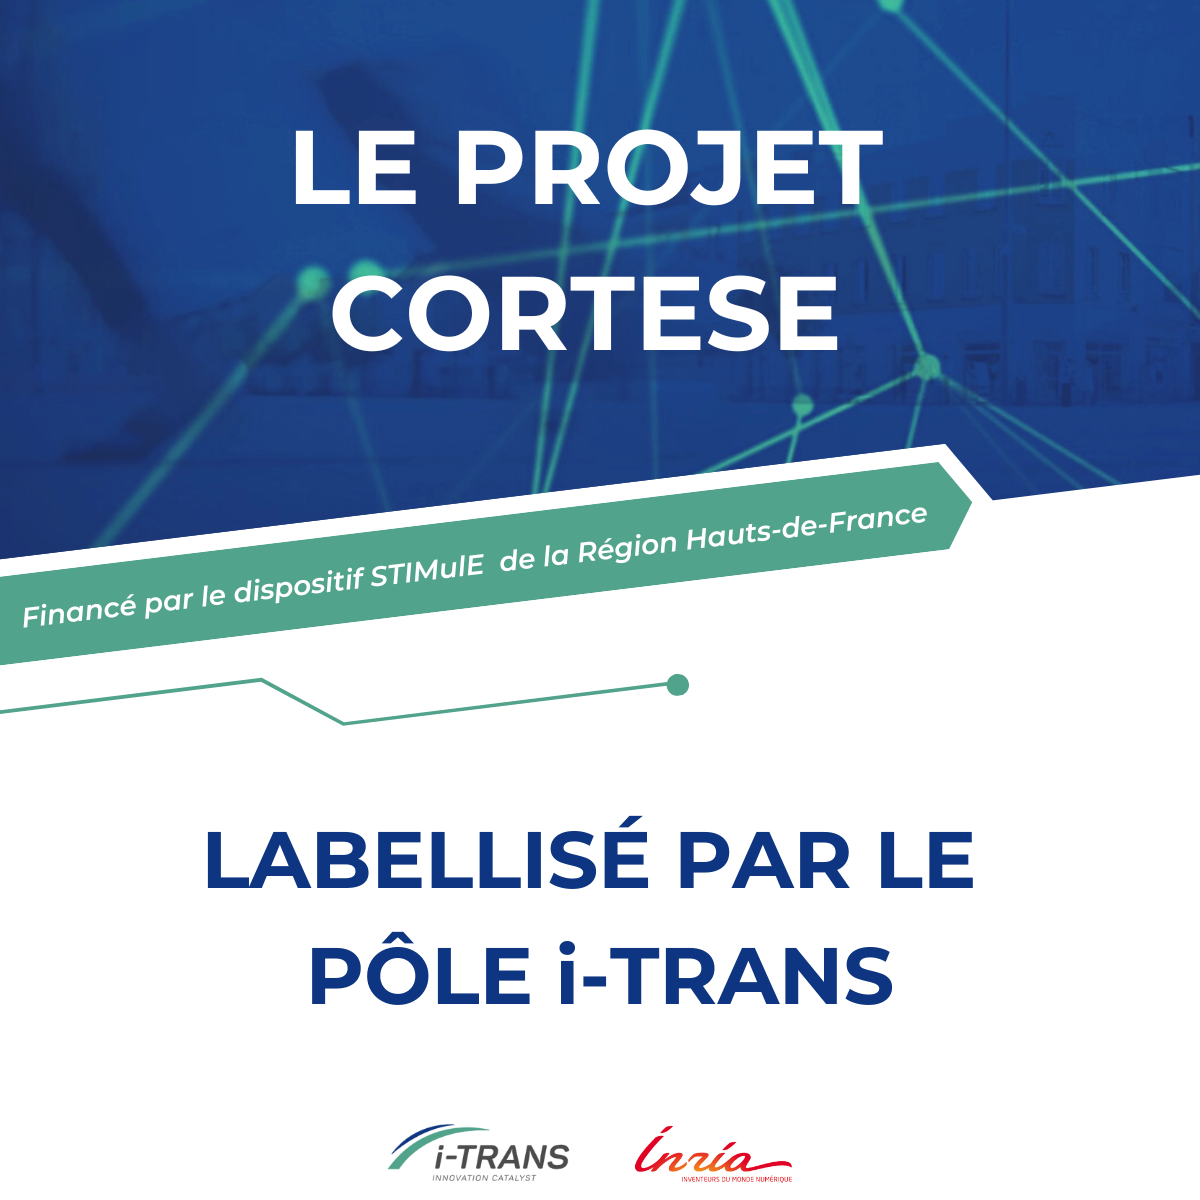 Le projet CORTESE porté par l’INRIA et financé par le dispositif STIMULE des Hauts de France a été labellisé par le pôle i-Trans